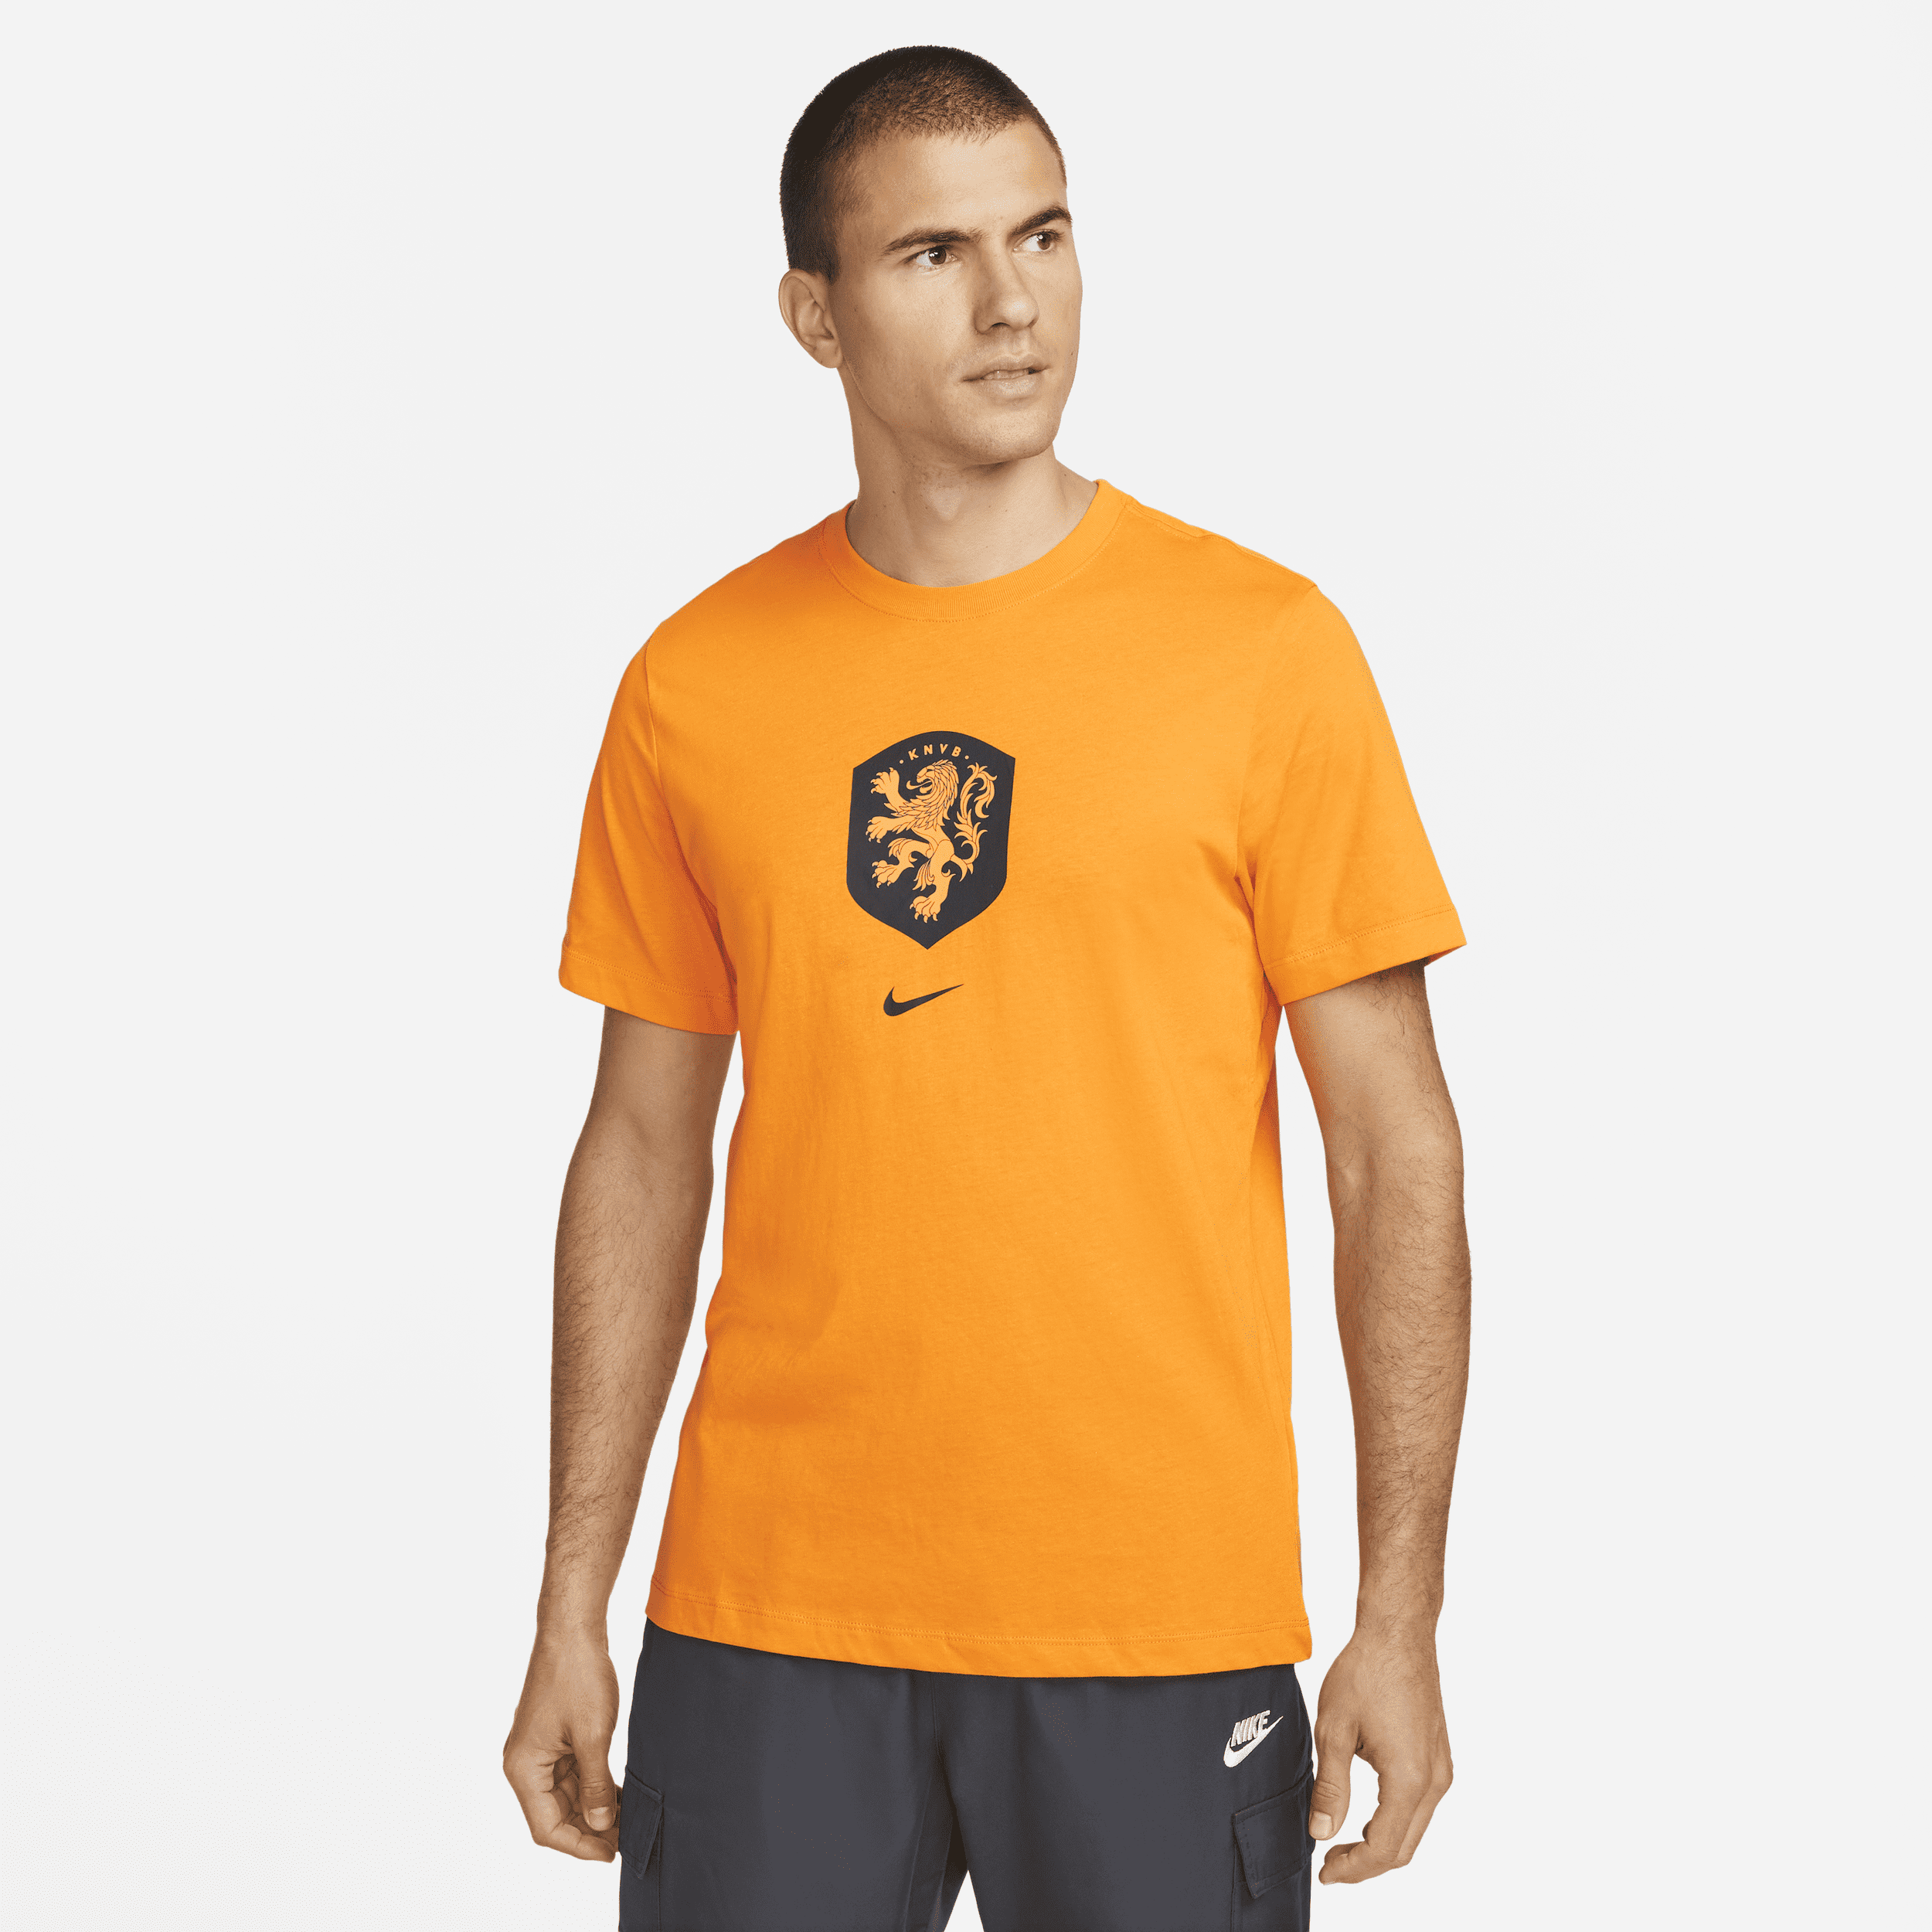 Países Bajos Camiseta Nike - Hombre - Naranja